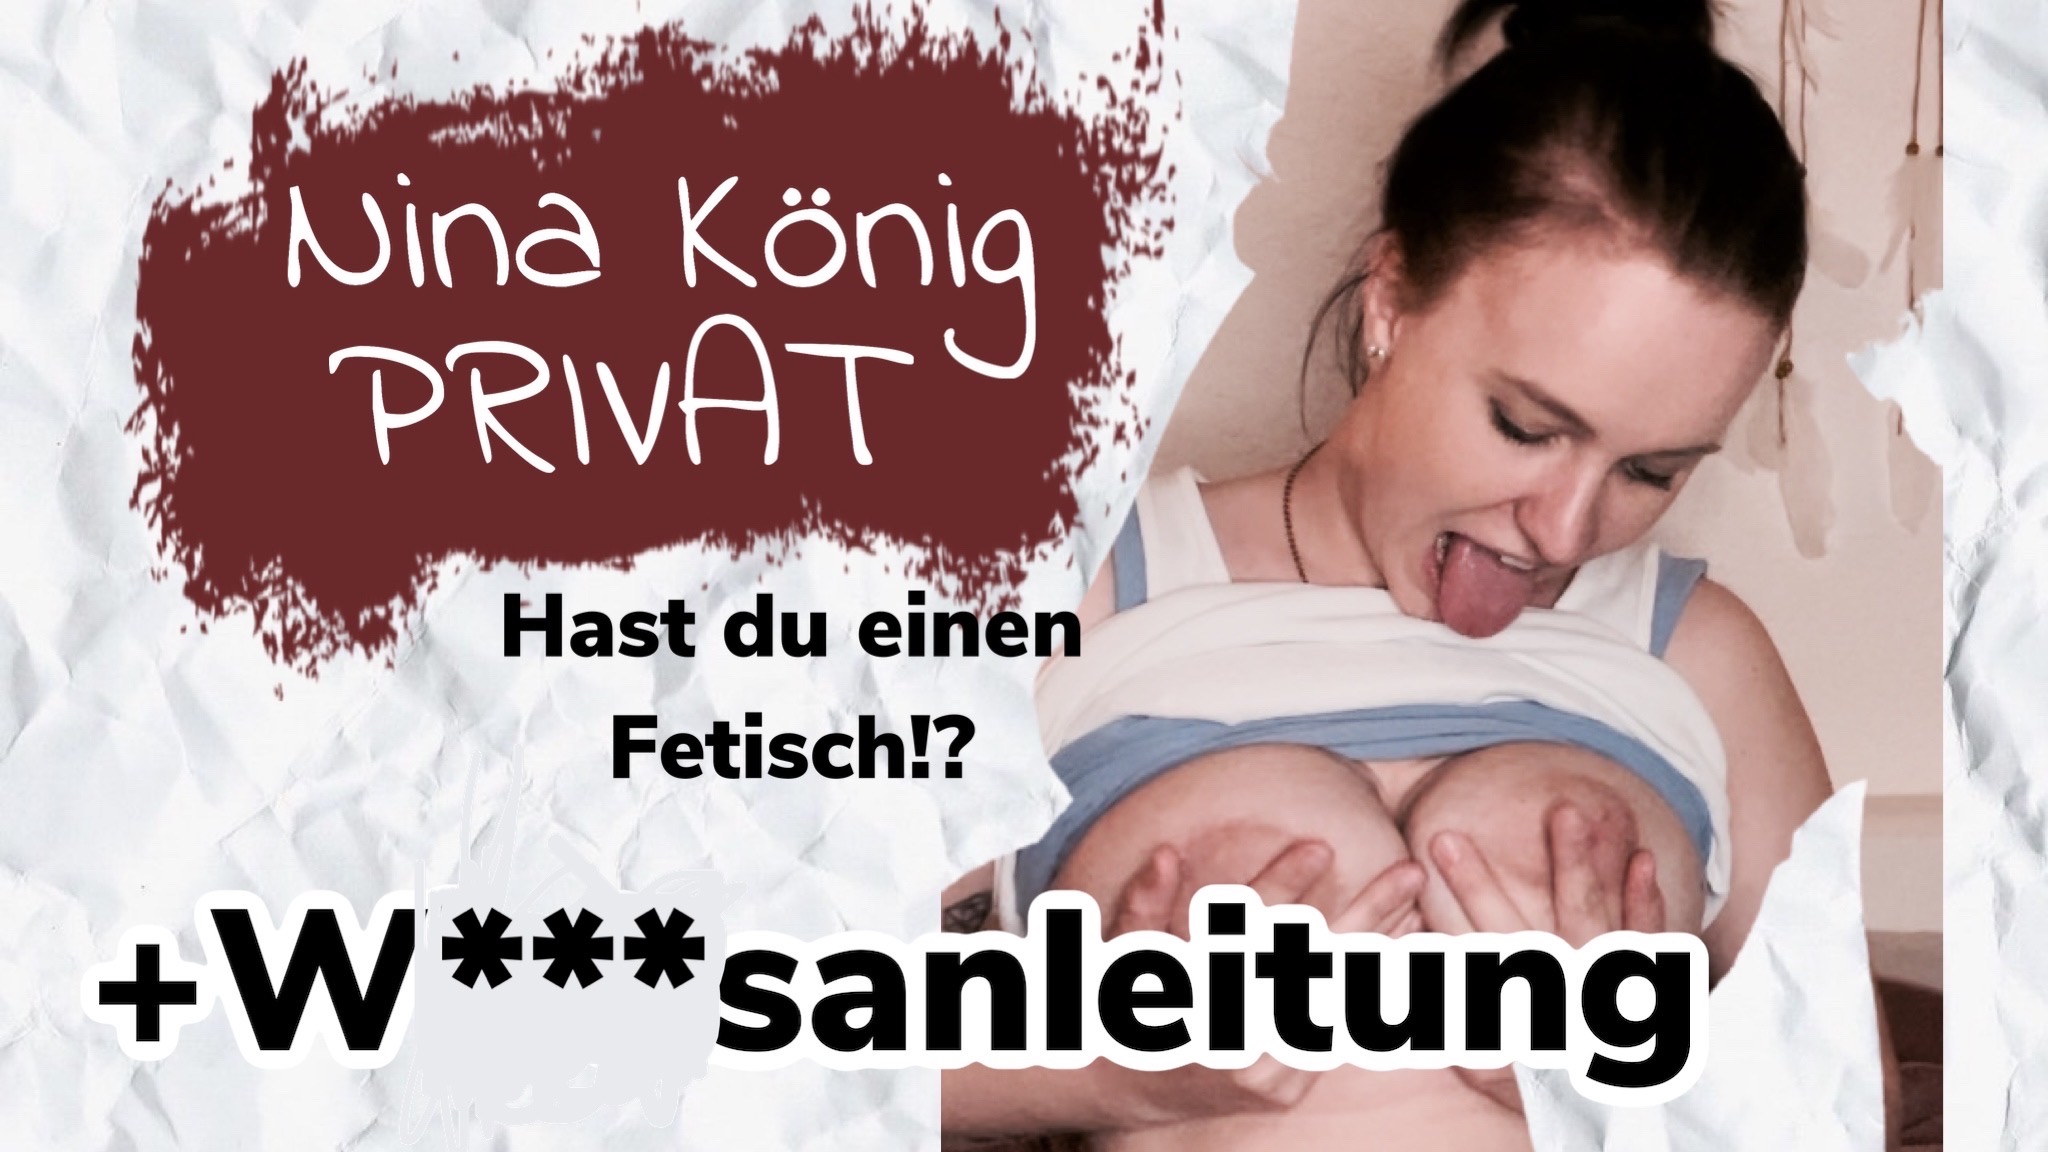 Nina-König Porno Video: Fetisch? Kein Problem ! plus Krasse Wichsanleitung